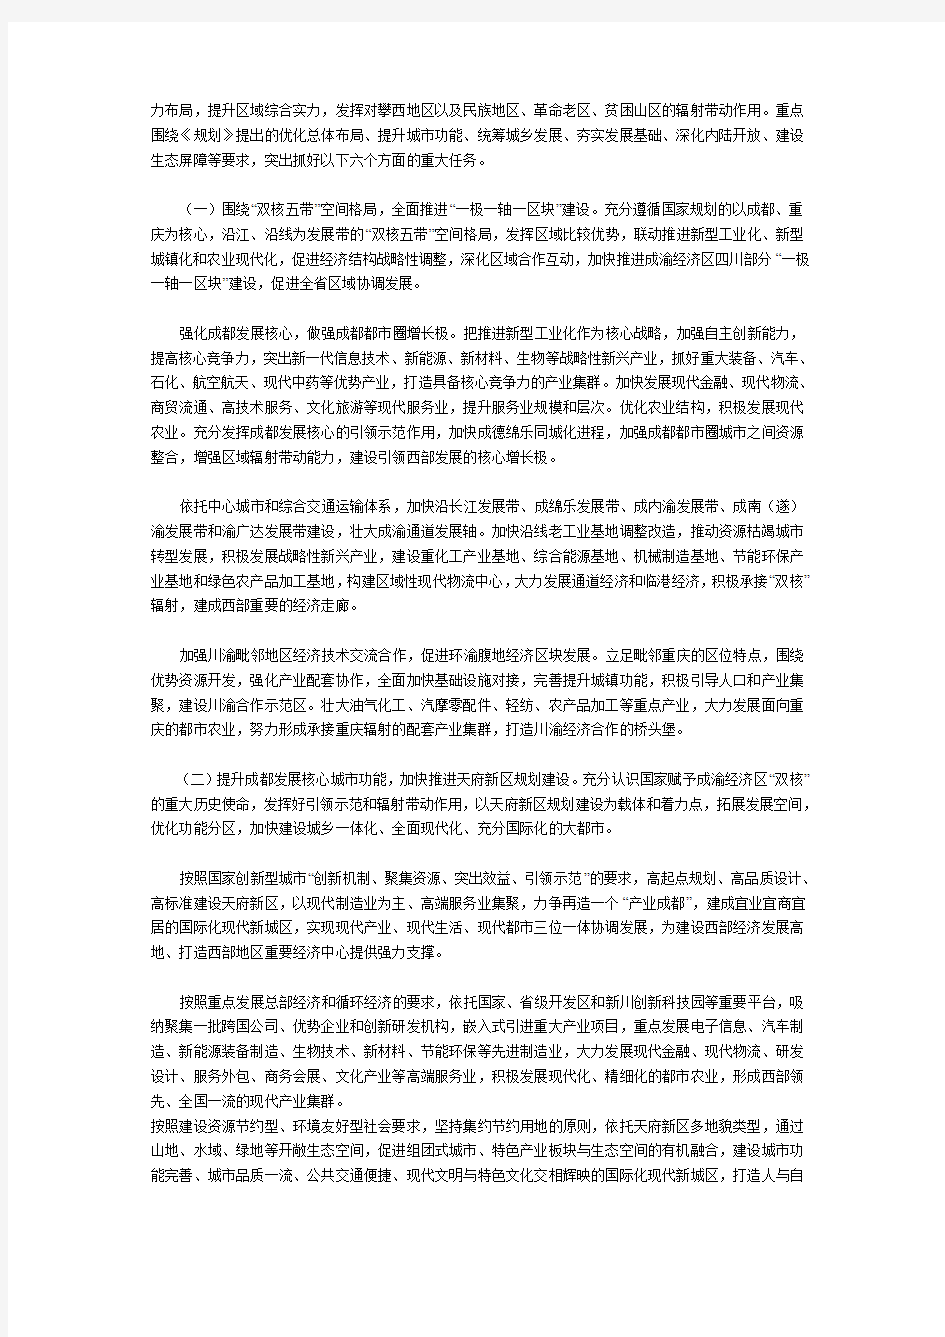 四川省人民政府关于贯彻成渝经济区区域规划的实施意见